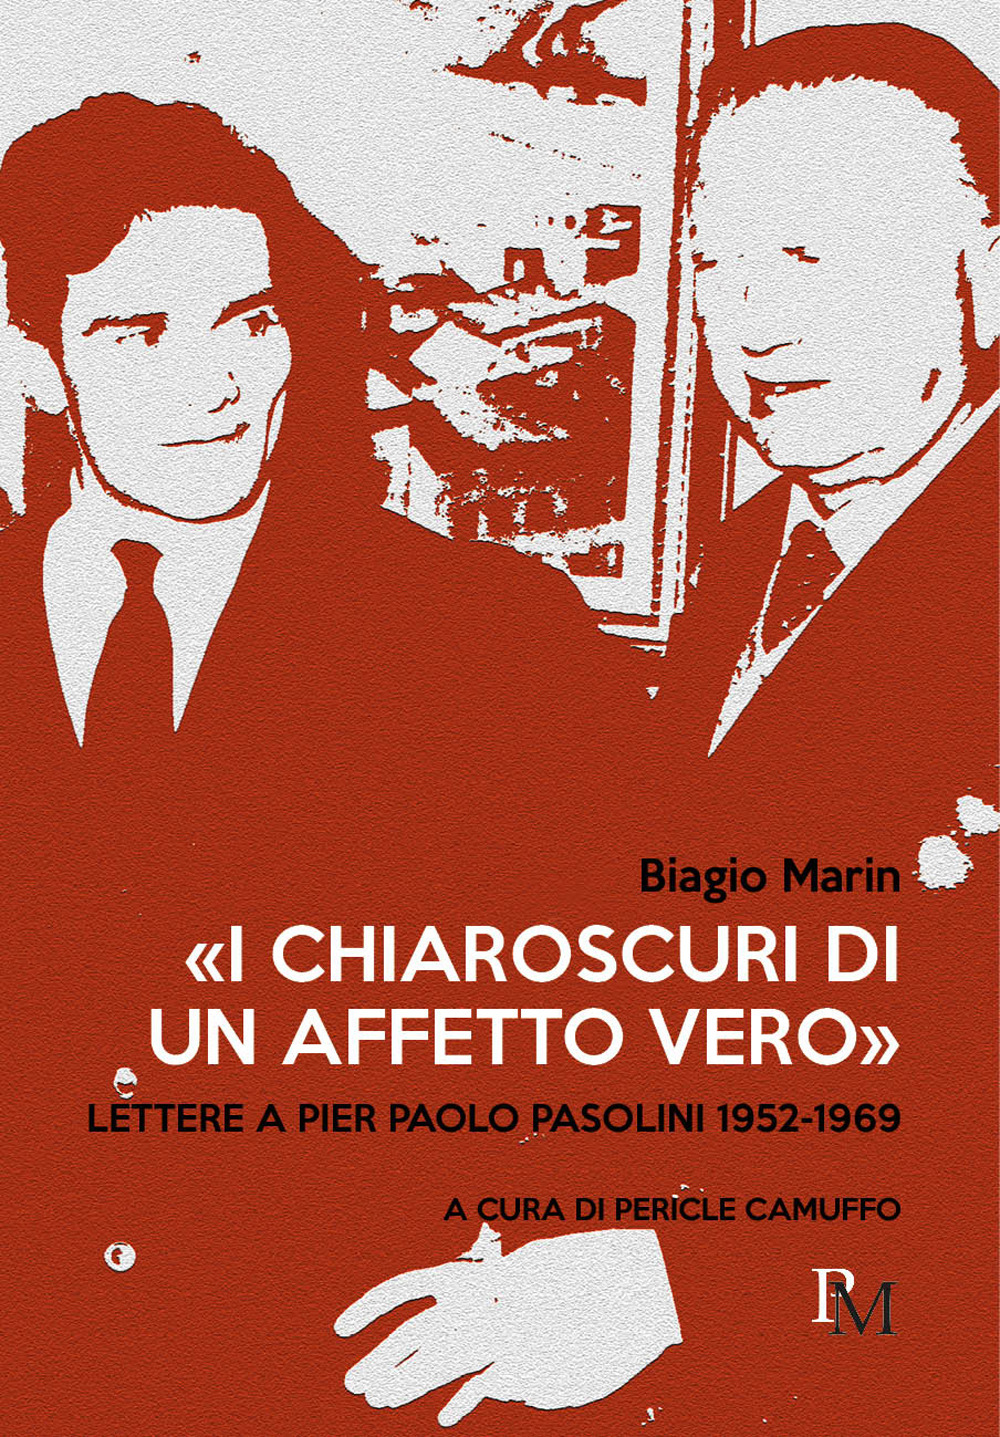 Le lettere di Biagio Marin a Pier Paolo Pasolini. “I chiaroscuri di un affetto vero” è il libro prezioso di Pericle Camuffo.